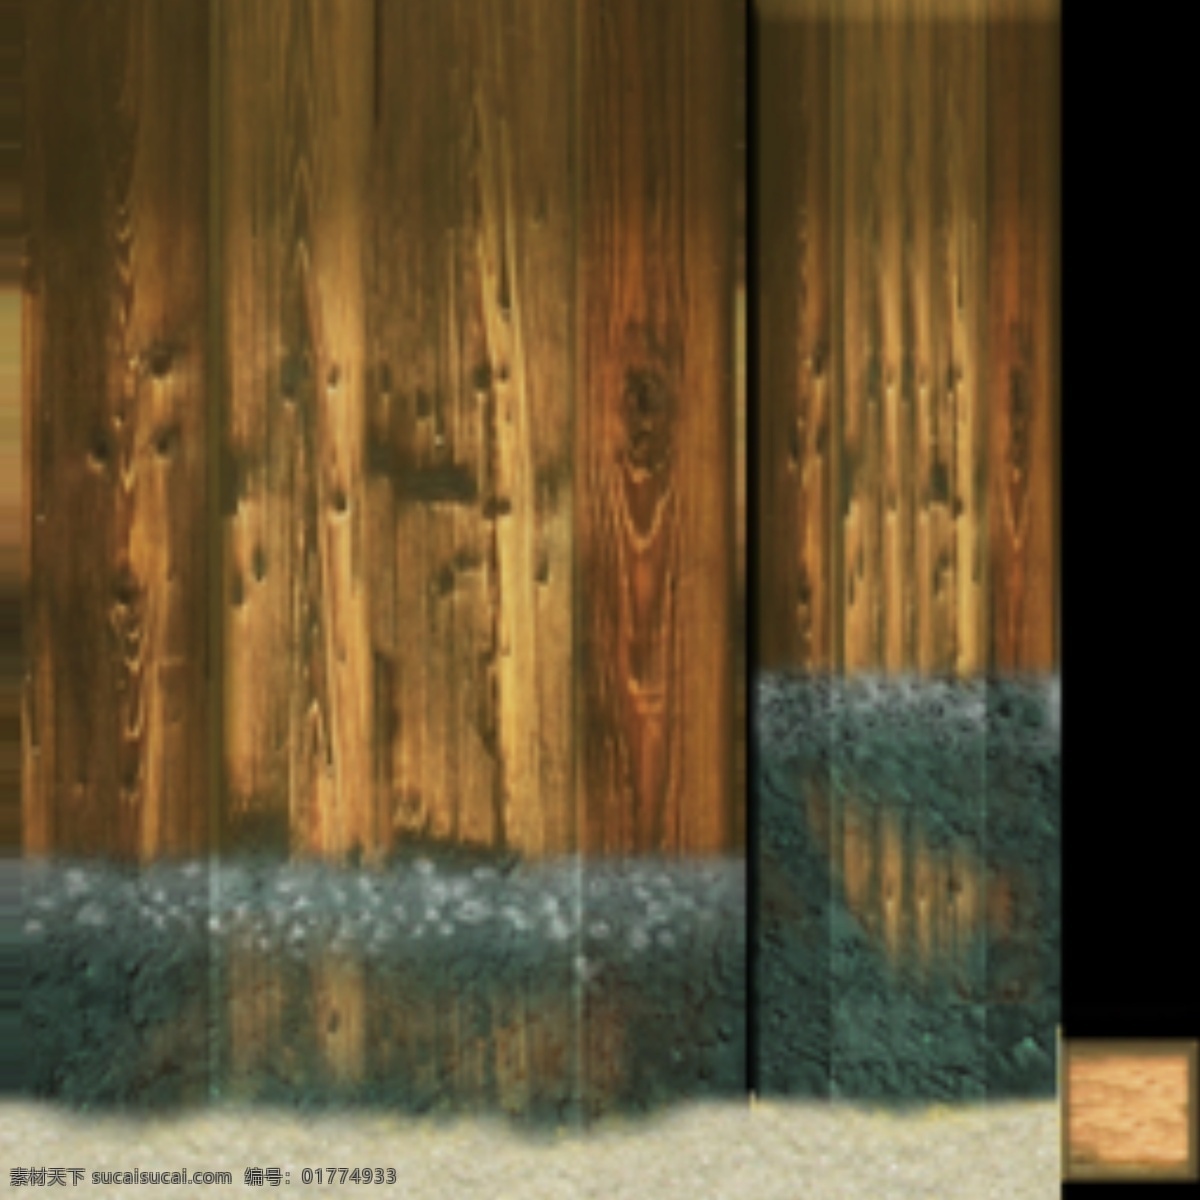 木头 房子 场景 建筑 木头房子 3d模型素材 游戏cg模型